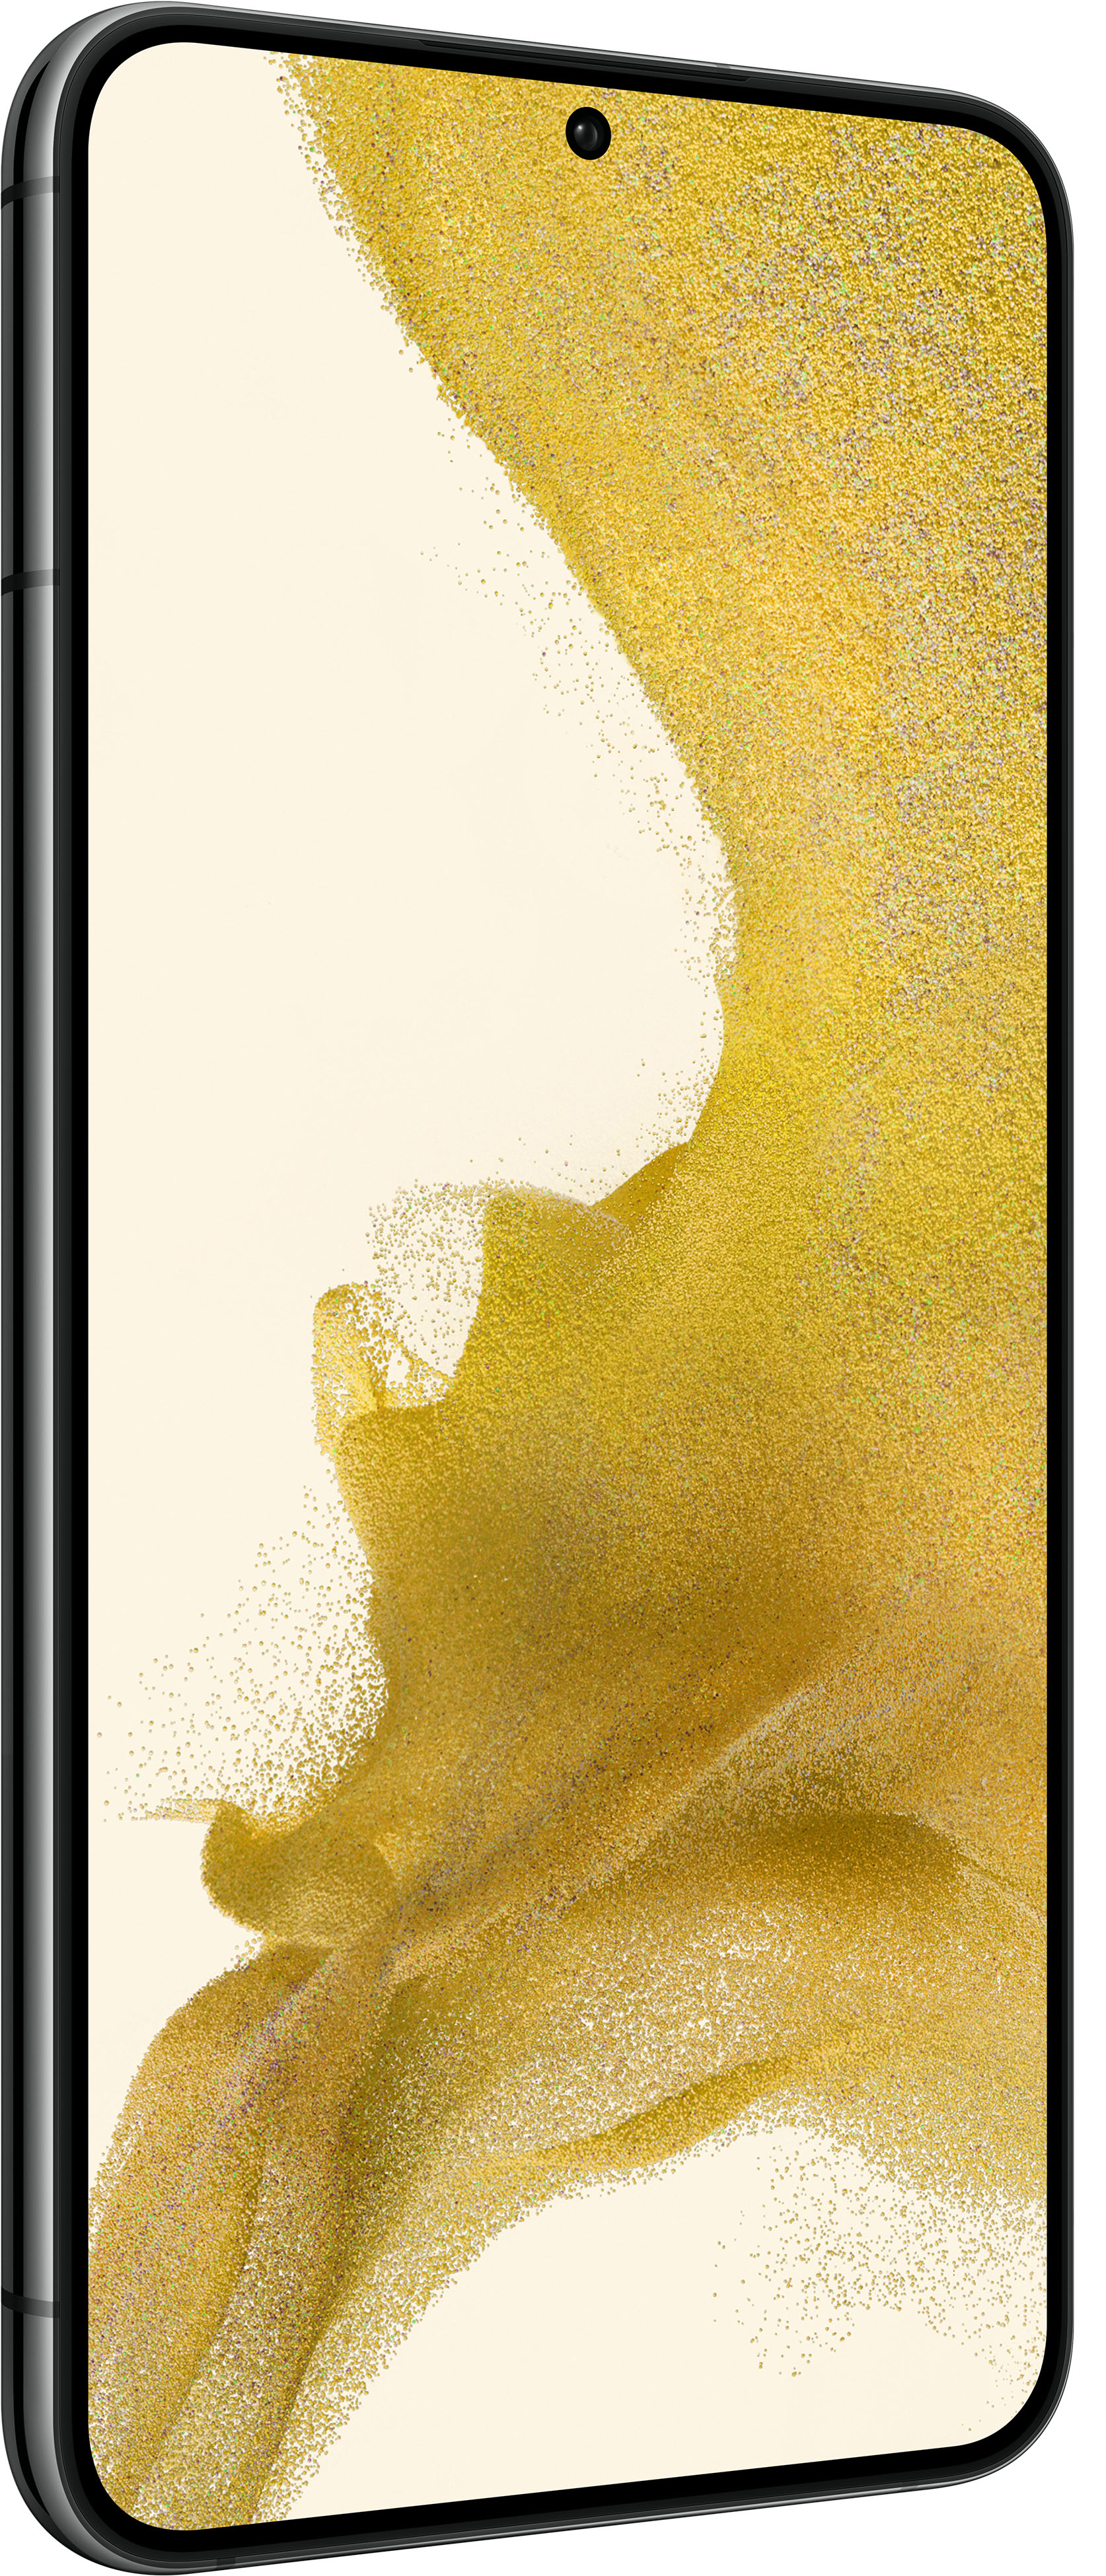 Angle View: AT&T Samsung Galaxy S22 Plus Phantom Black 256GB